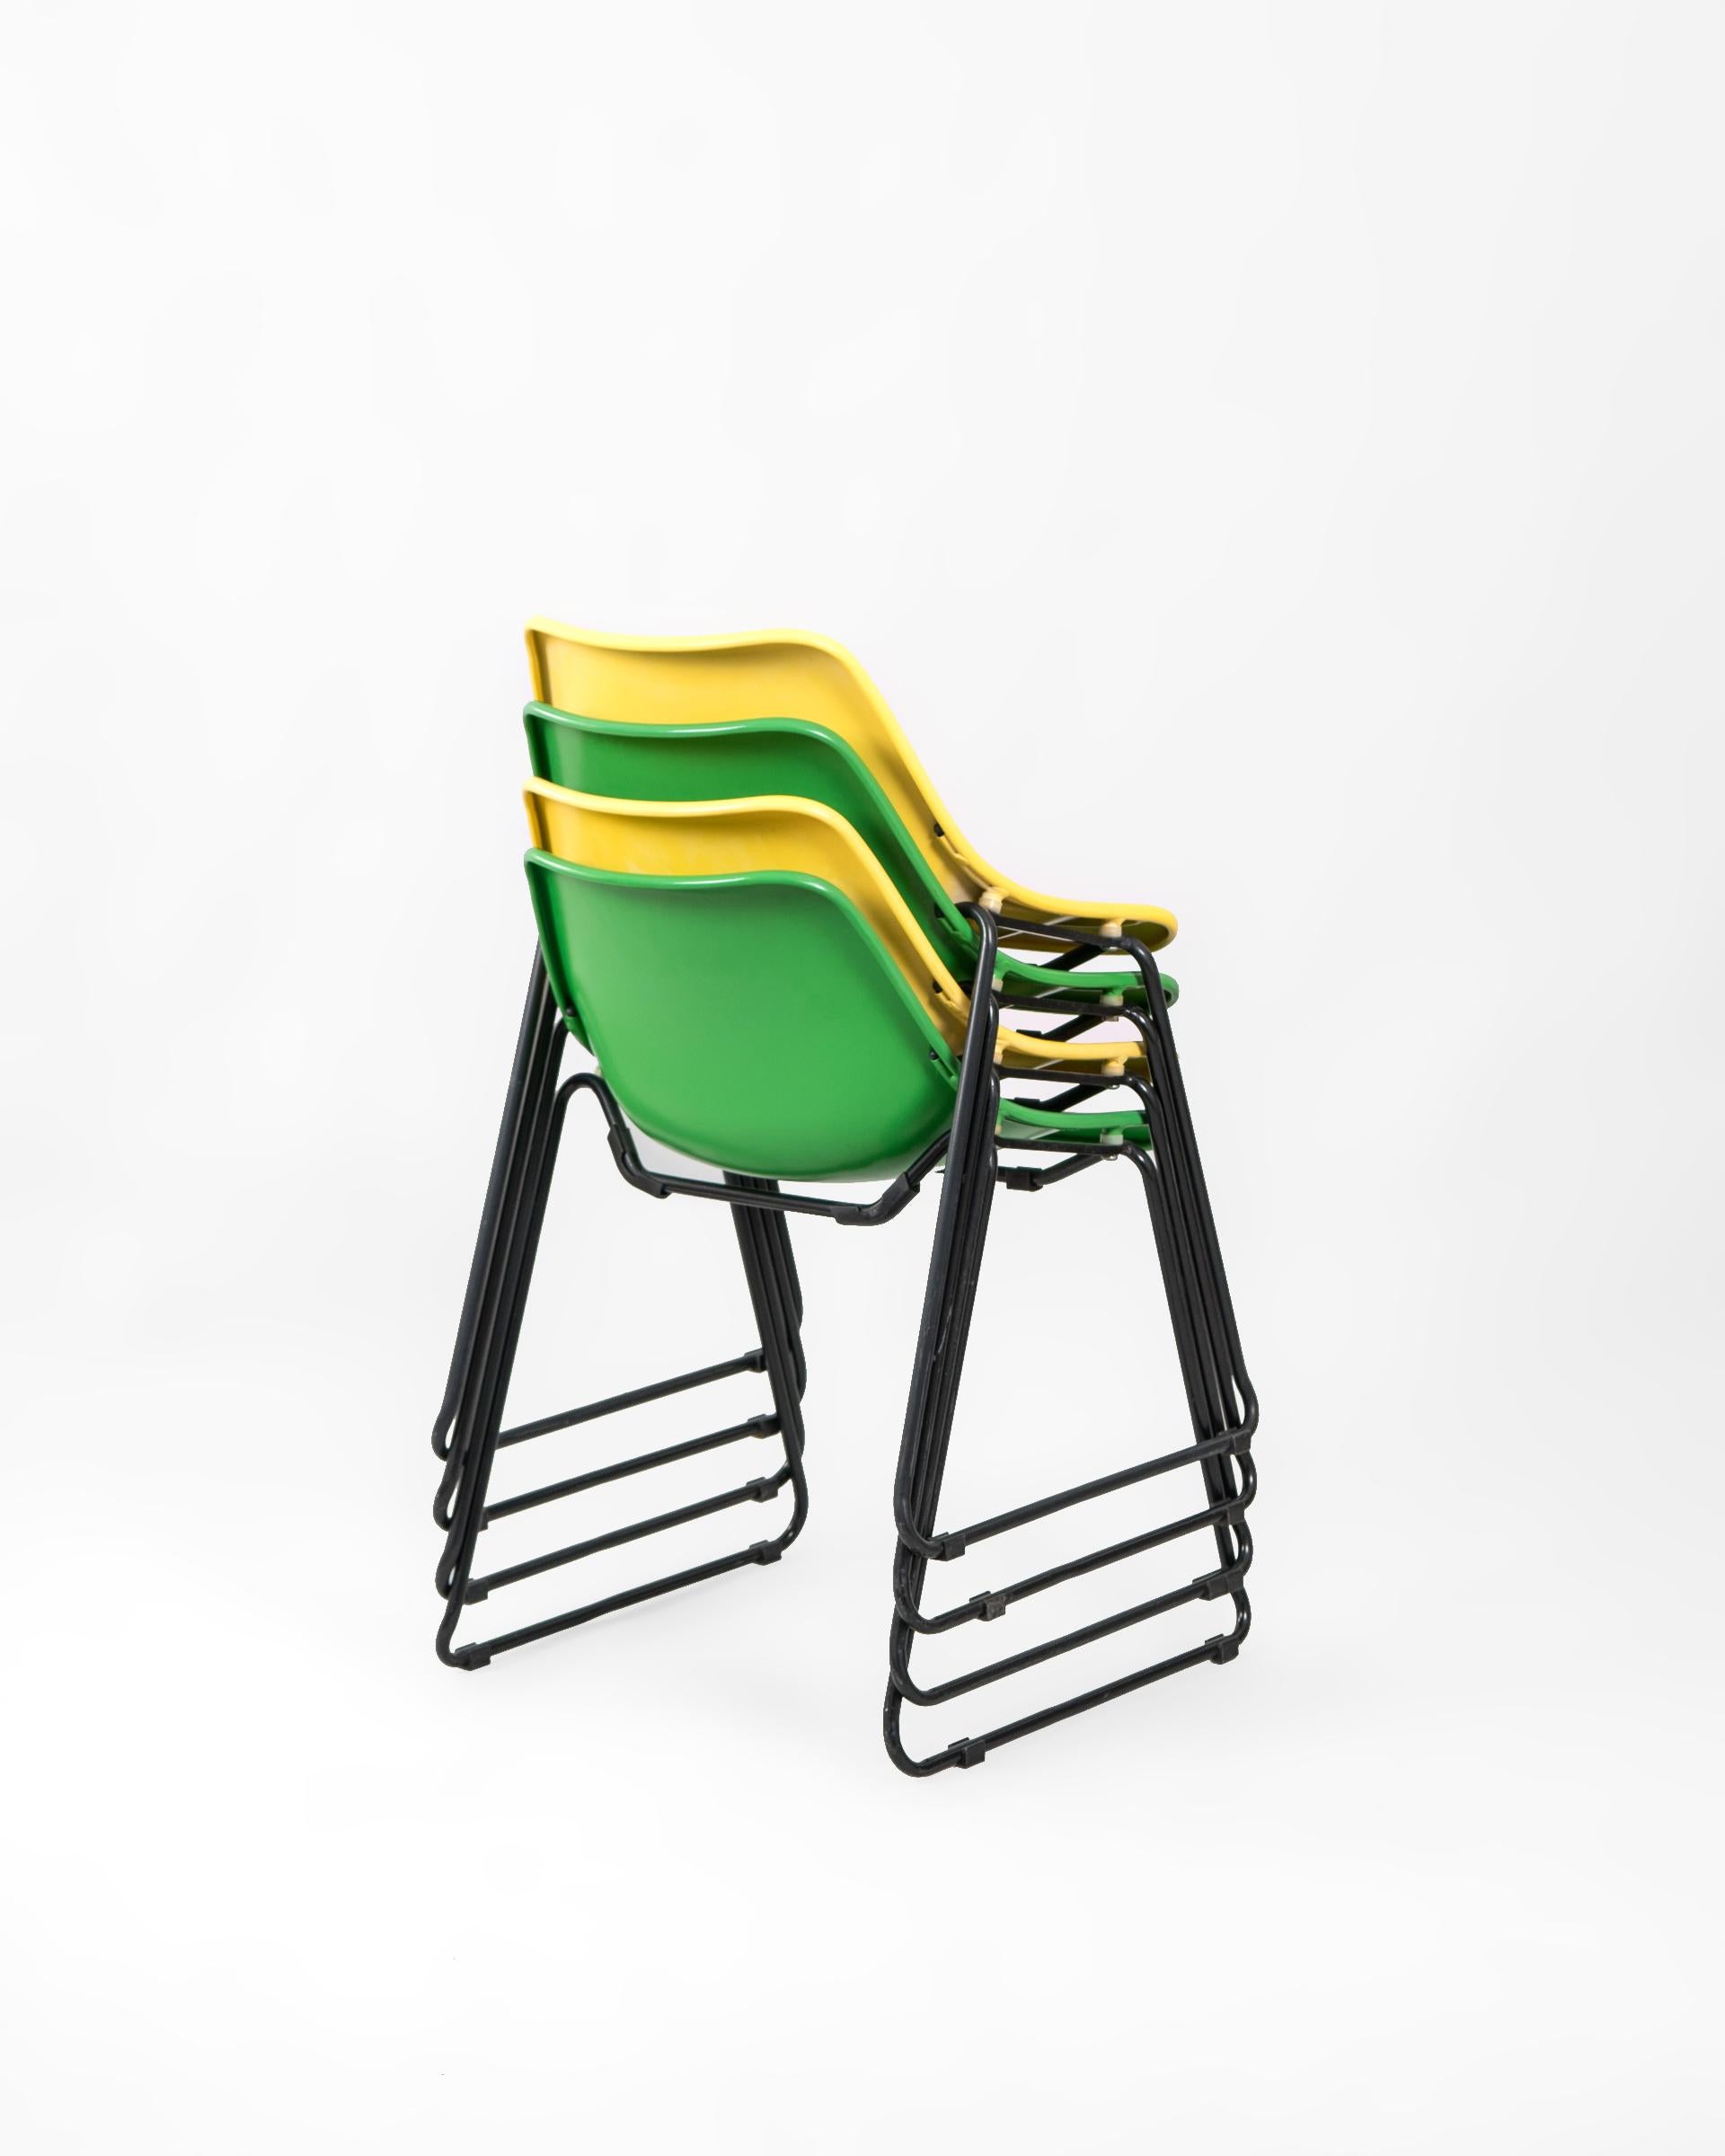 Conjunto de cuatro sillas de hierro apilables de origen francés. Divertida y ergonómica sillería lacada en amarillo y verde con patas horquilla negras.

Se encuentran en muy buen estado de conservación, presentando leves marcas en la pintura